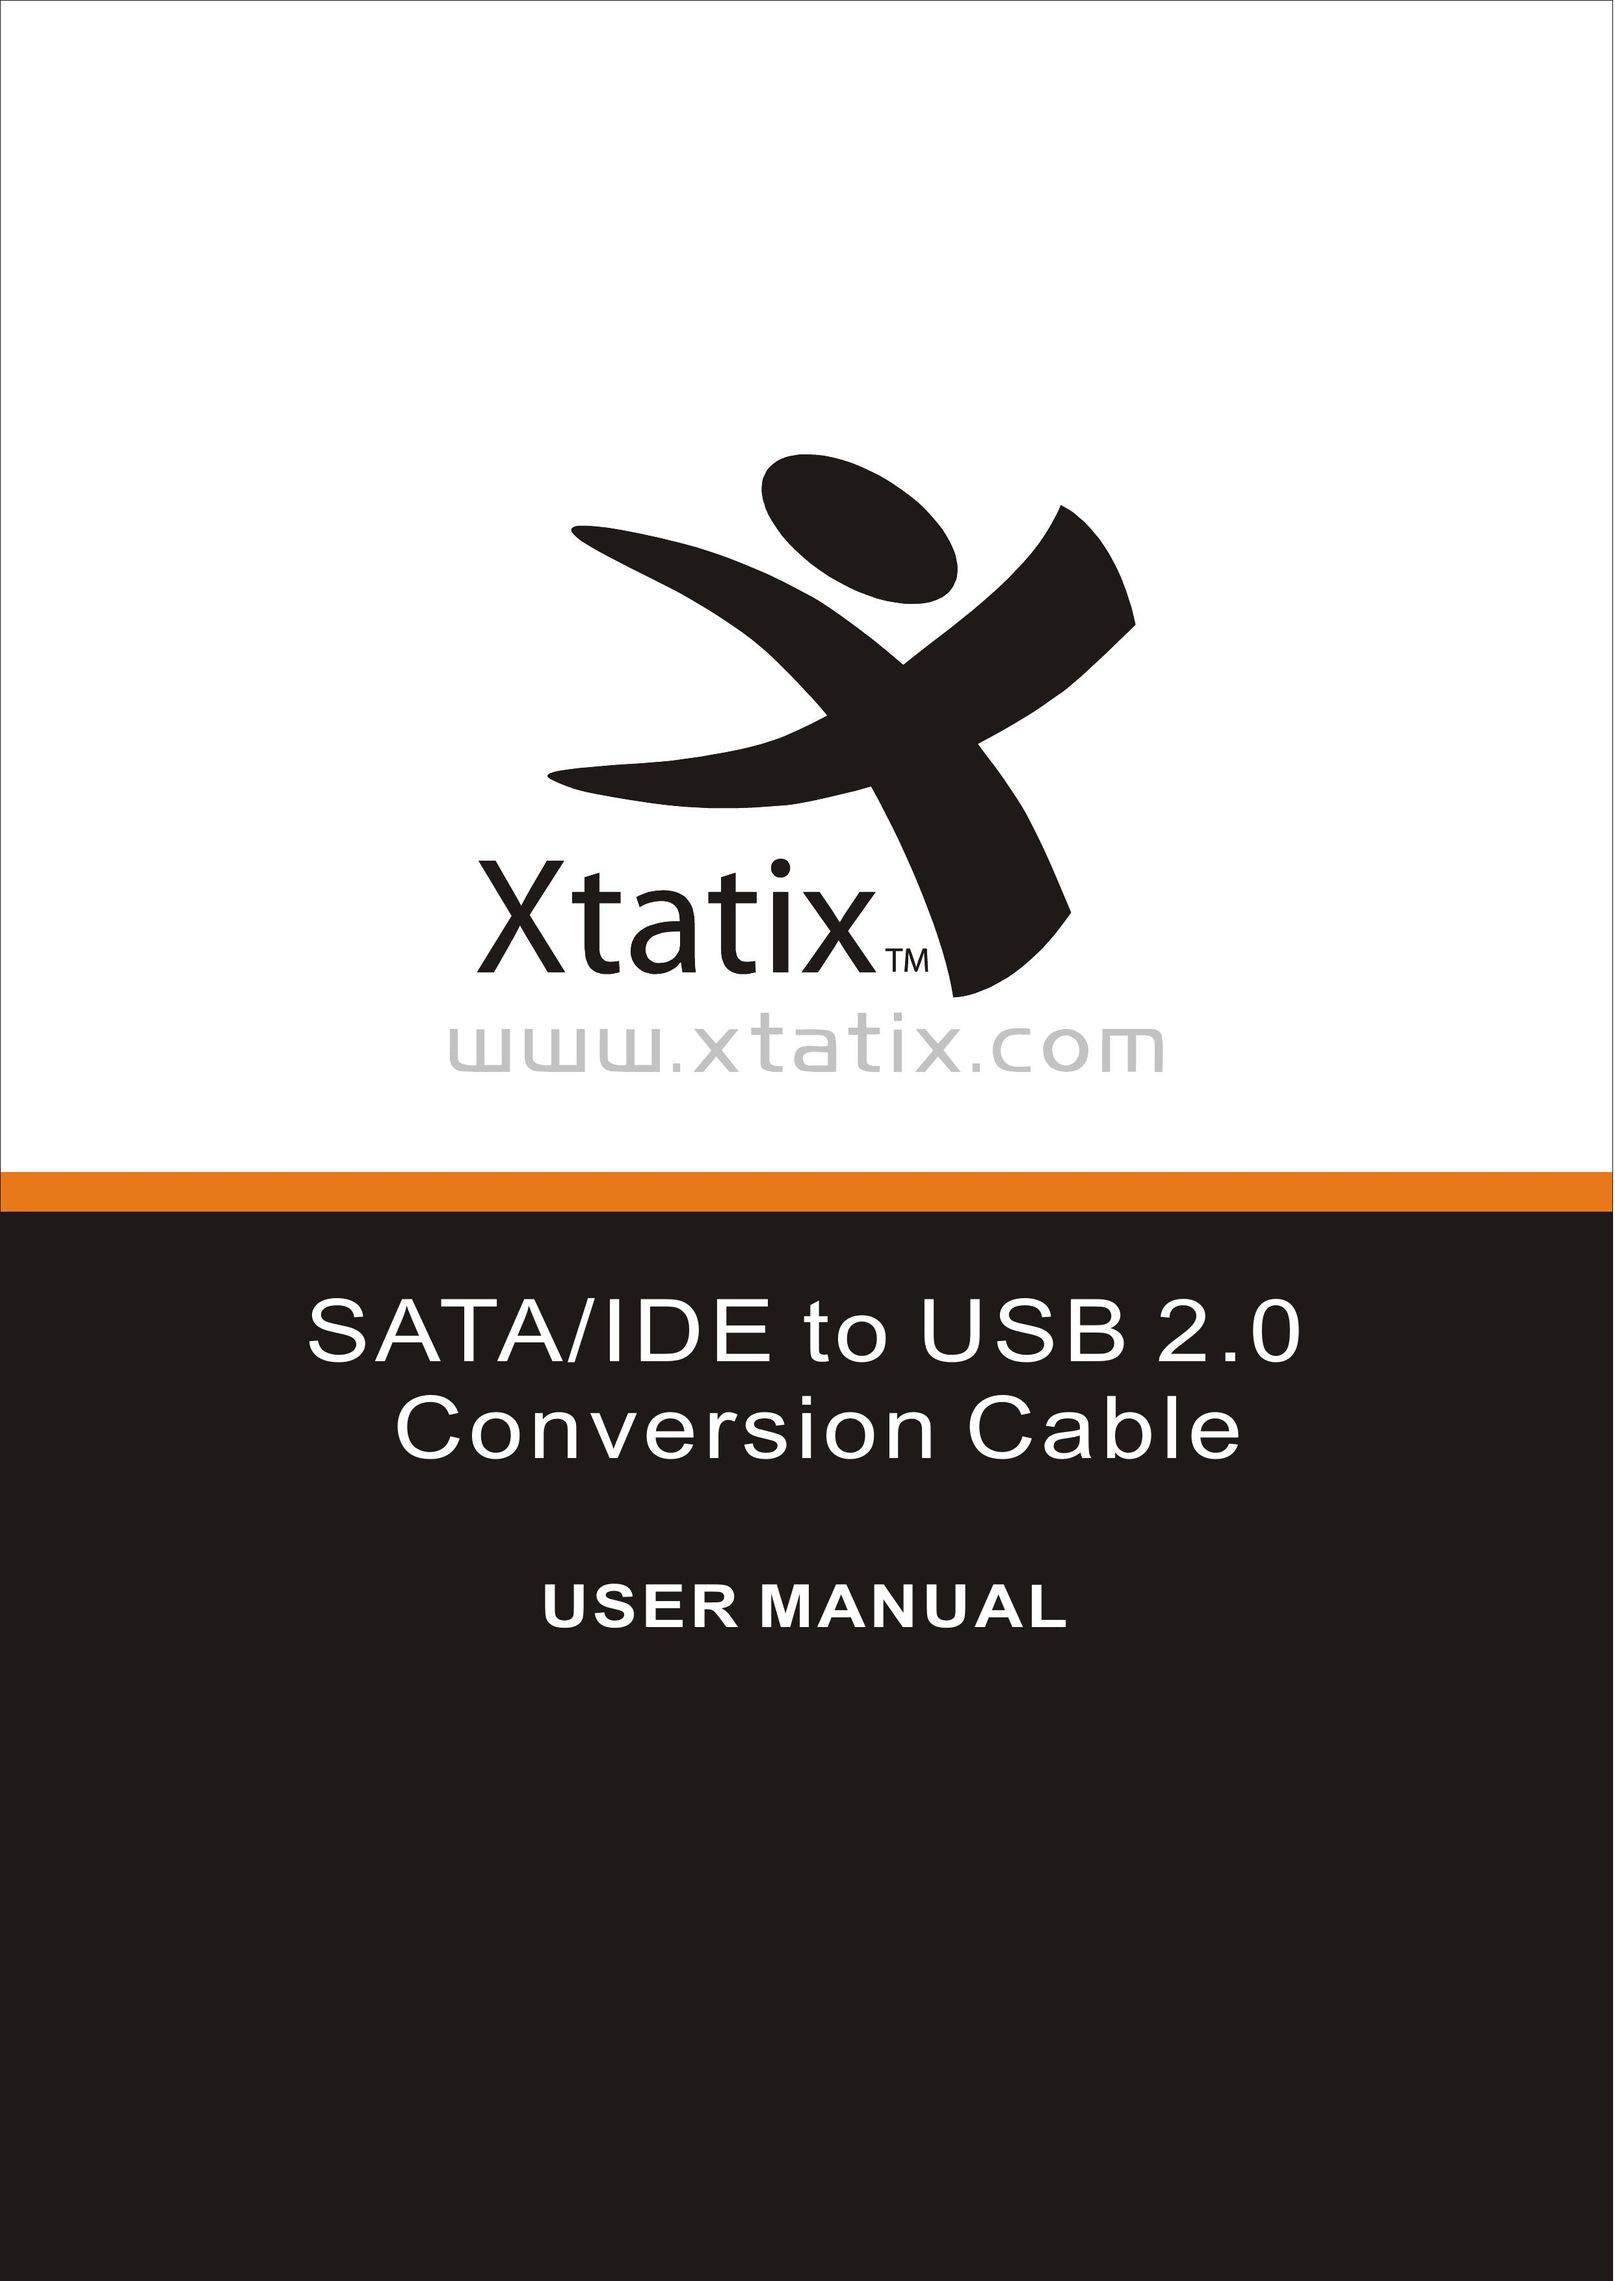 Xtatix XCA-PDSI Network Cables User Manual